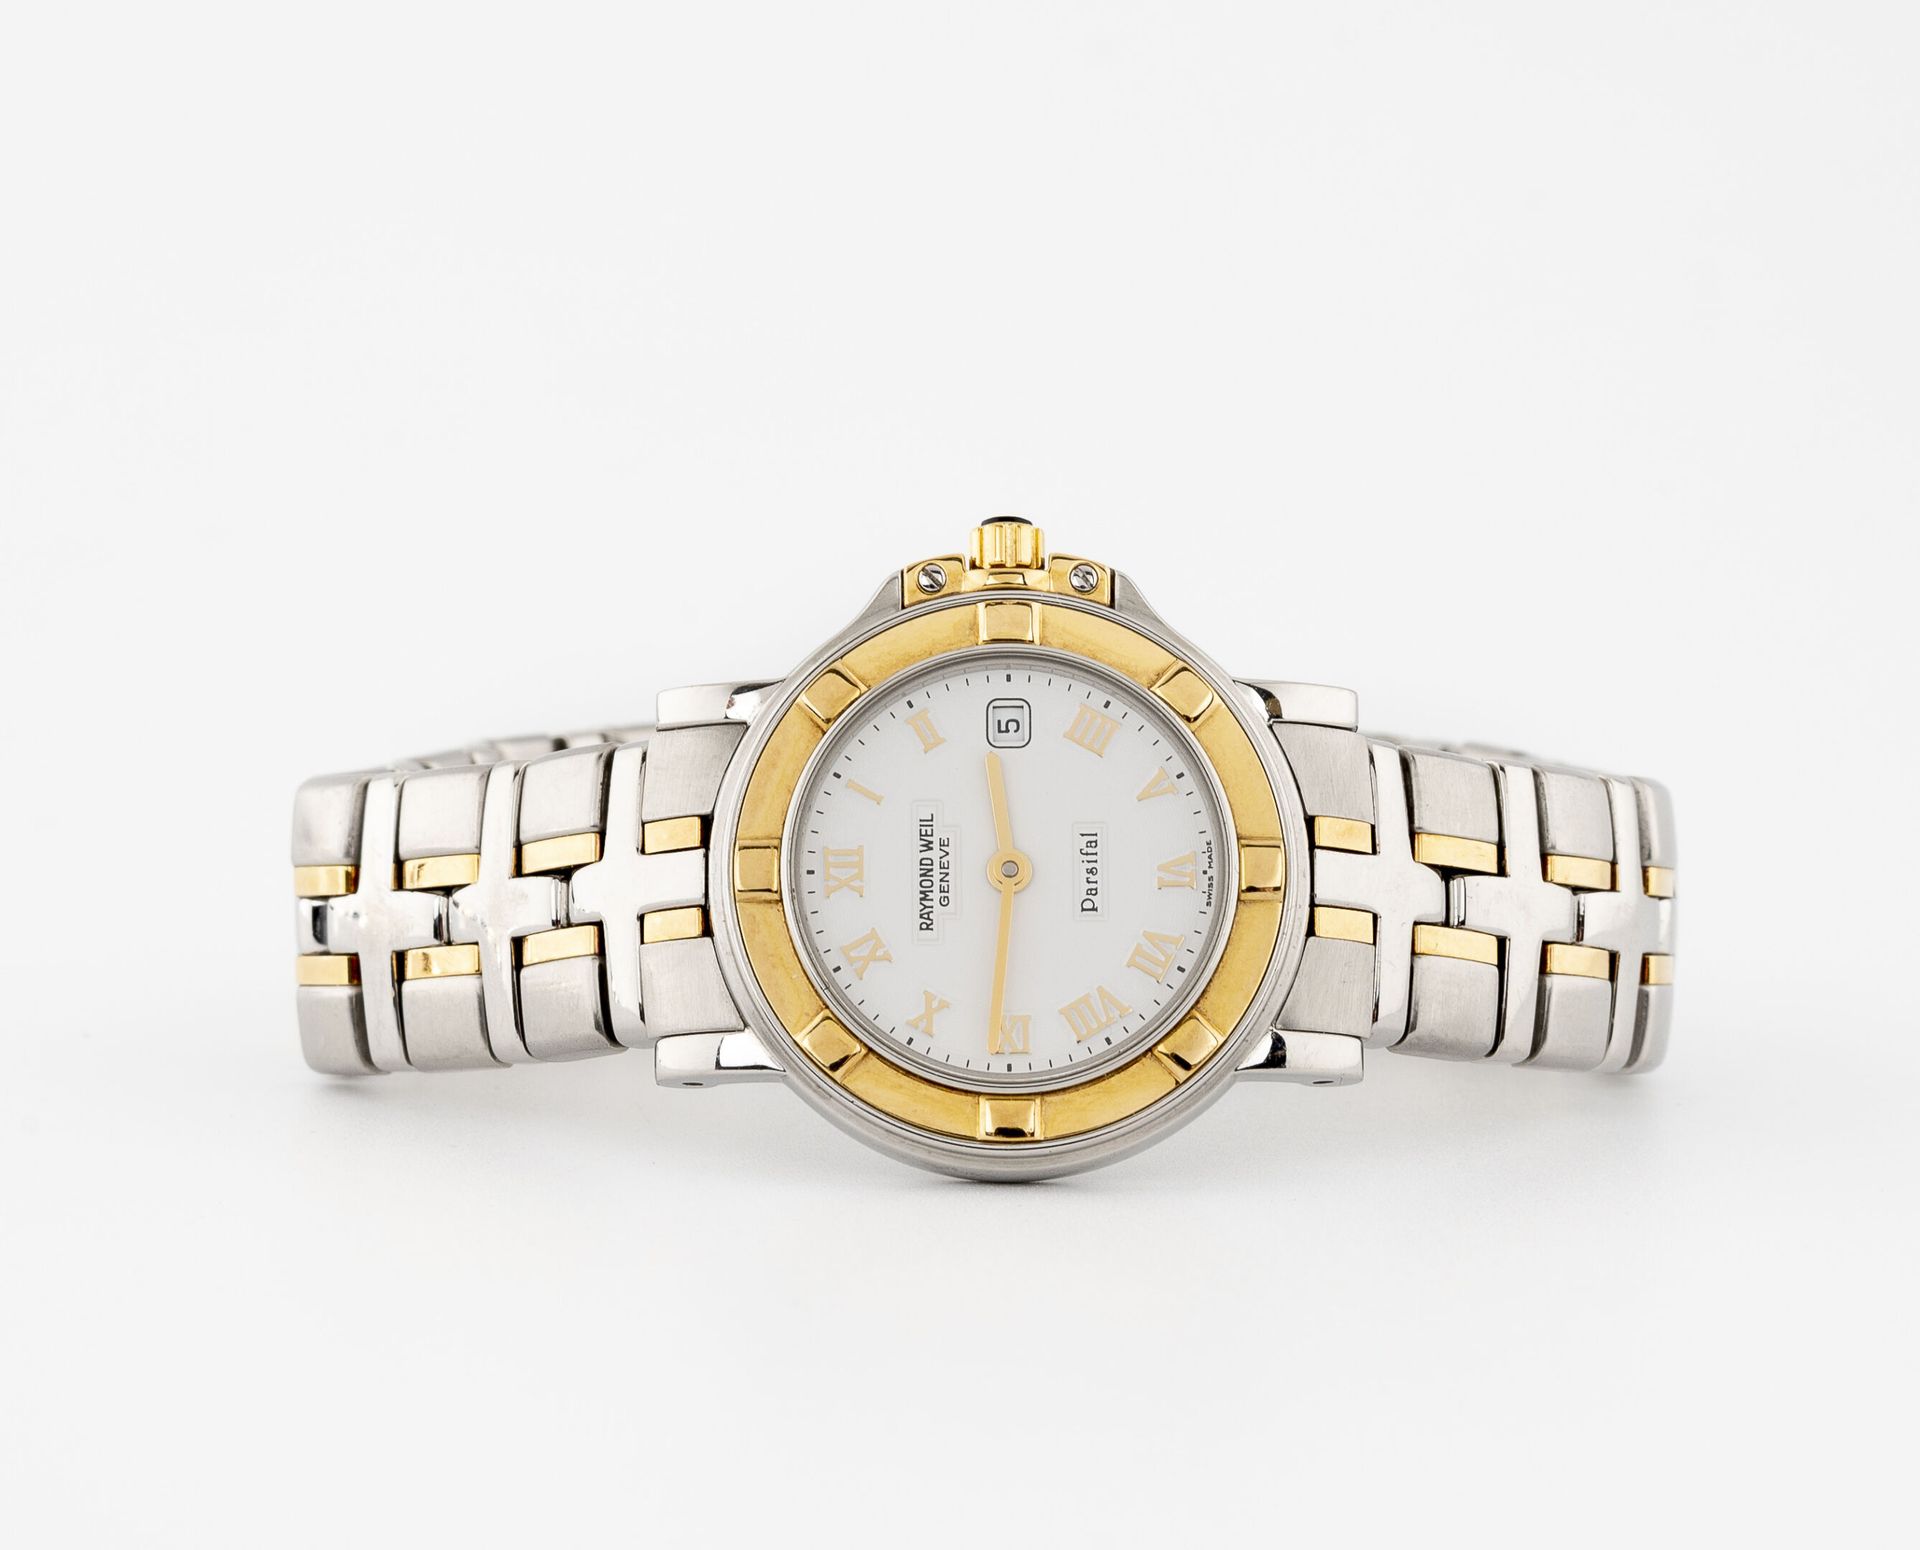 RAYMOND WEIL 精钢和鎏金金属的女士腕表。

白色搪瓷表盘，罗马数字时标。

日期窗口位于3点钟方向。

石英机芯。

拧回来了。

表壳直径：27毫&hellip;